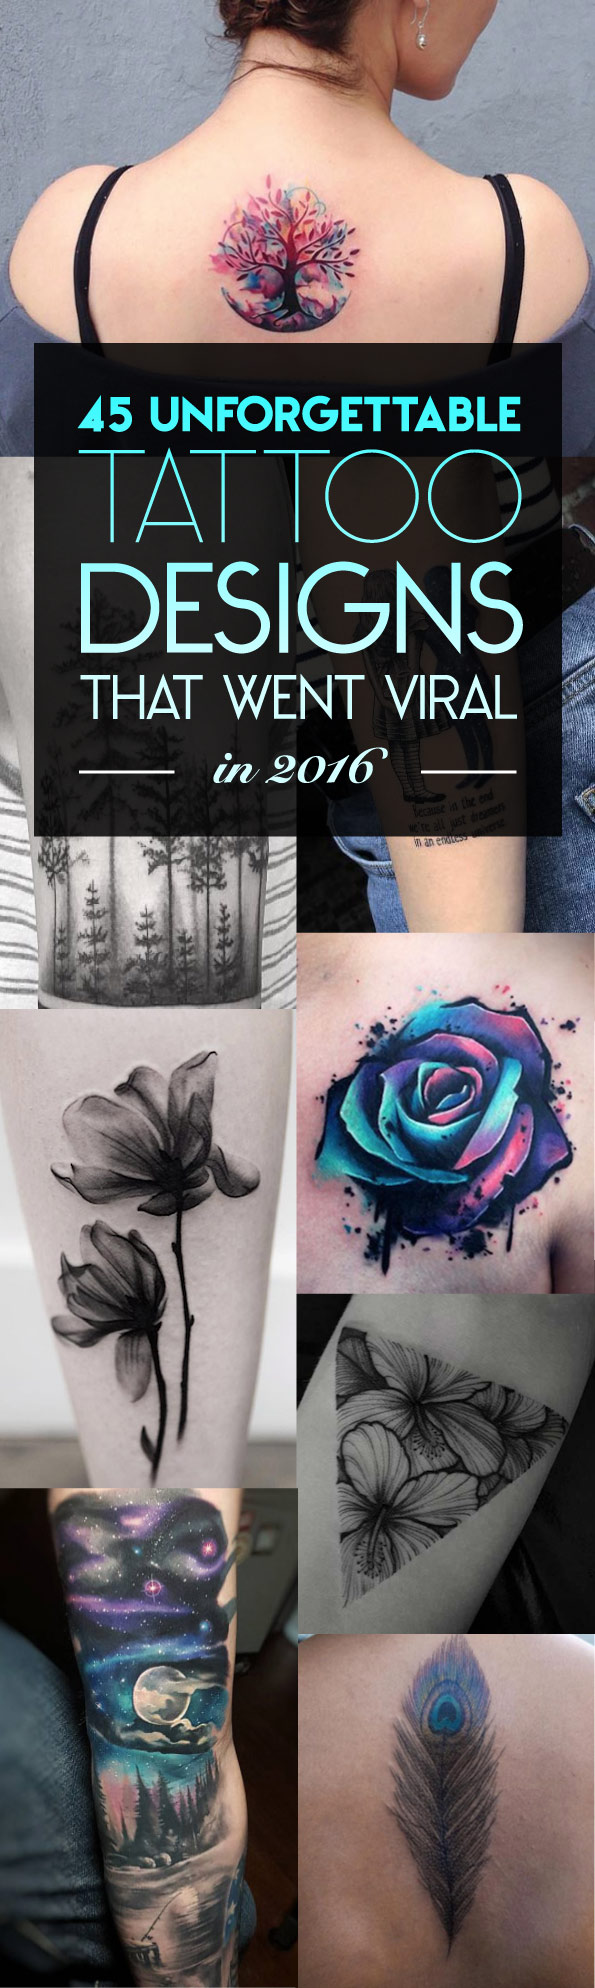 45 Unforgettable Tattoo Designs That Went Viral in 2016 | TattooBlend